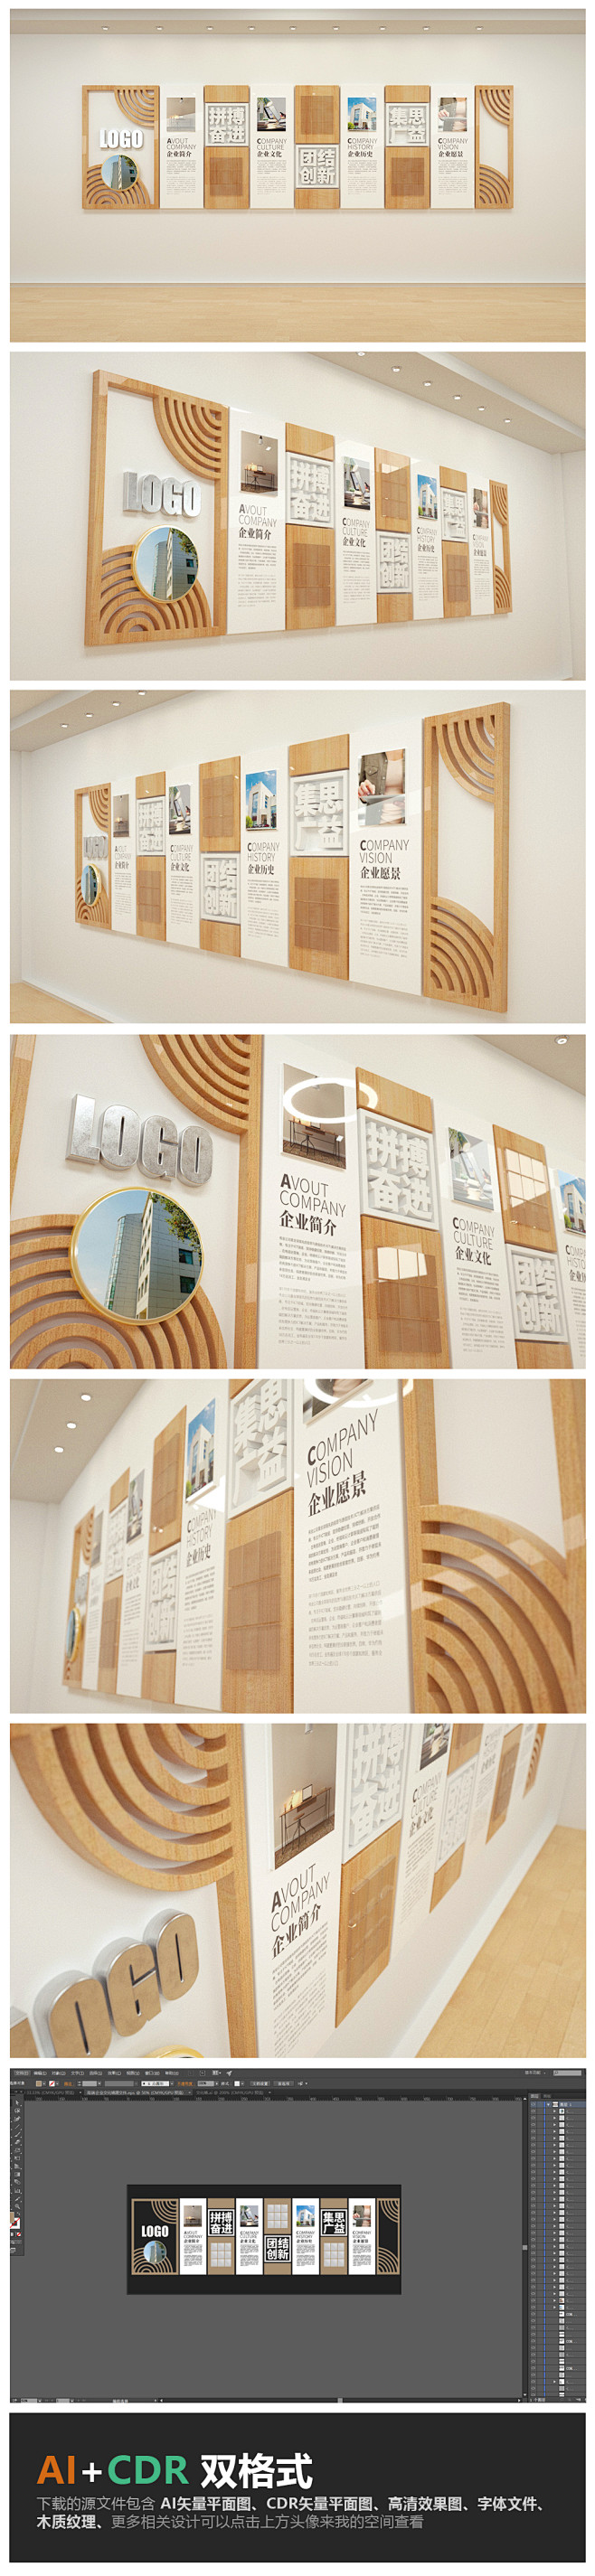 简约木质教育企业文化墙公司形象墙设计模板